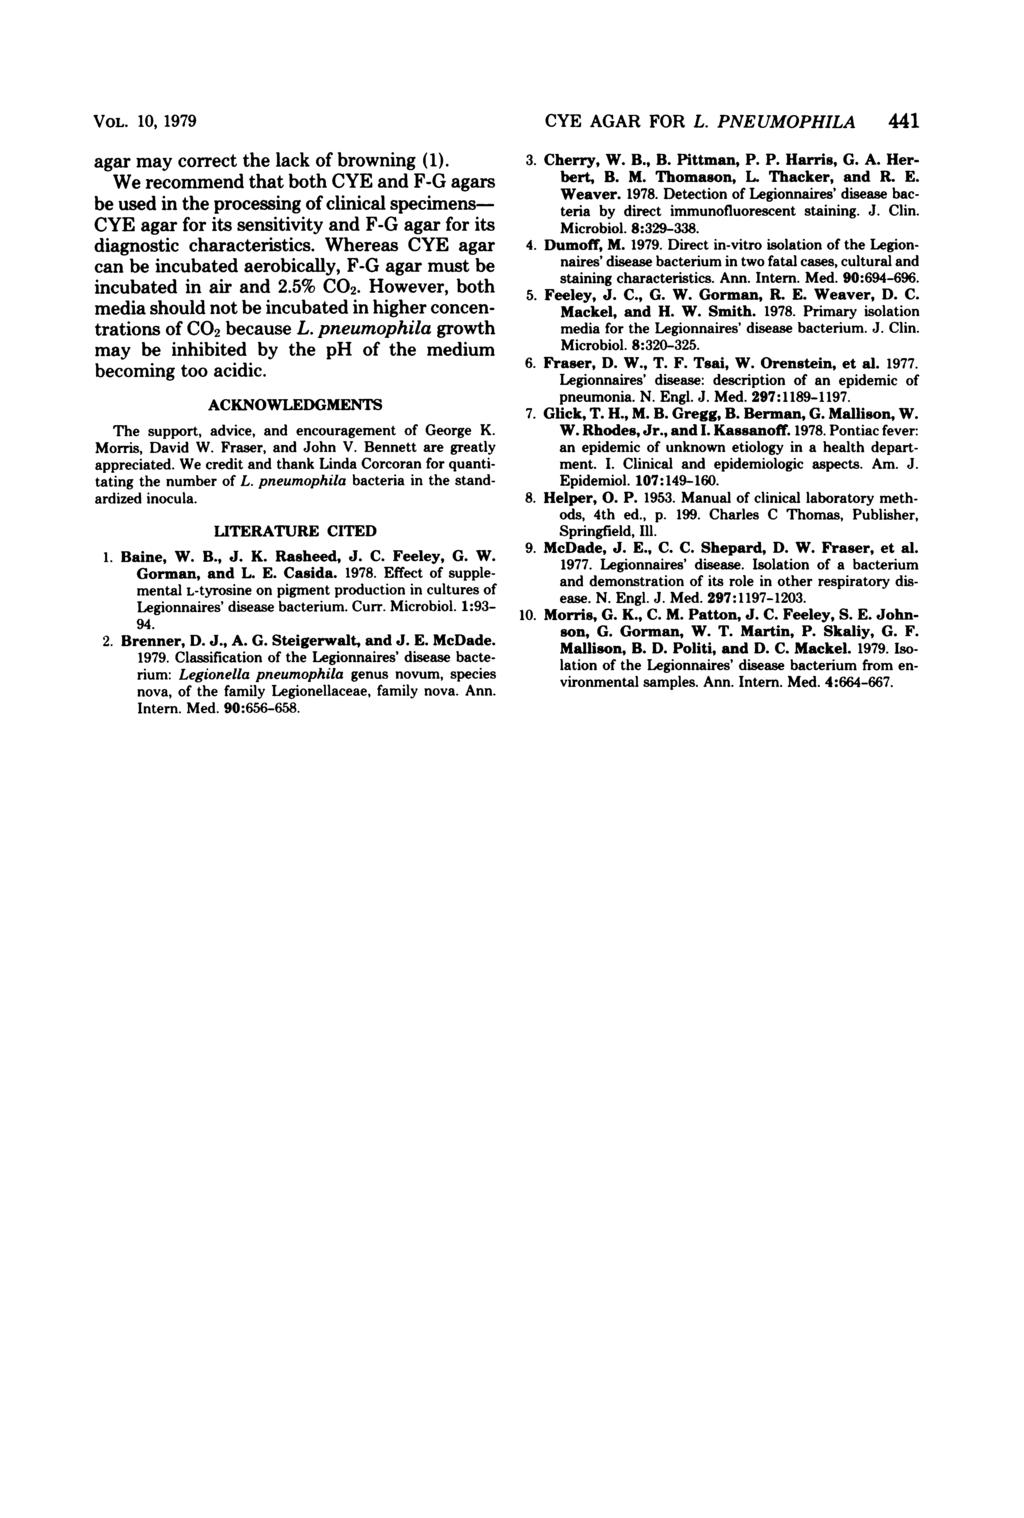 VOL. 10, 1979 agar may correct the lack of browning (1).